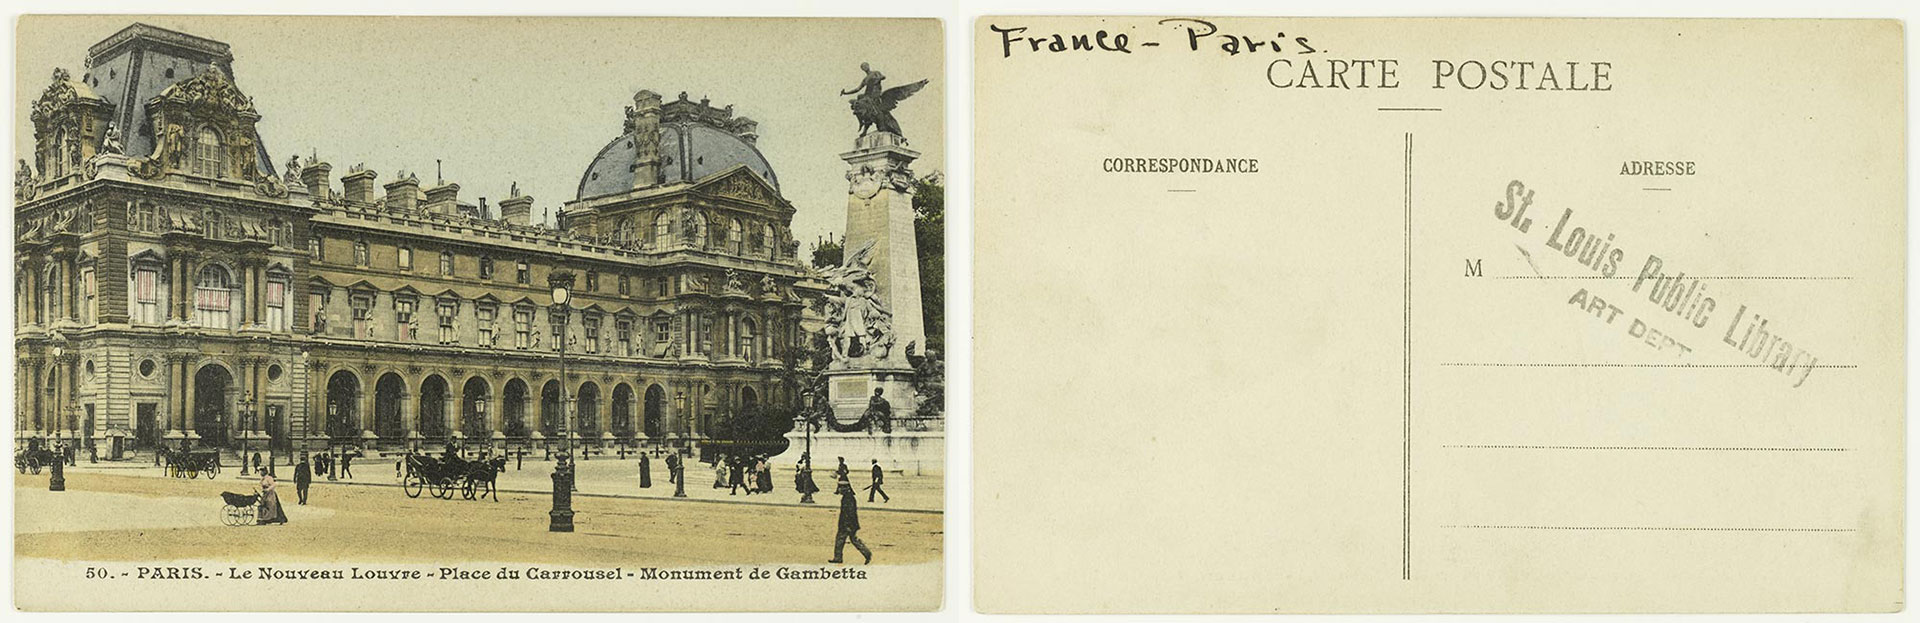 Paris le Nouveau Louvre - Place du Carrousel - Monument de Gambette ca. 1900